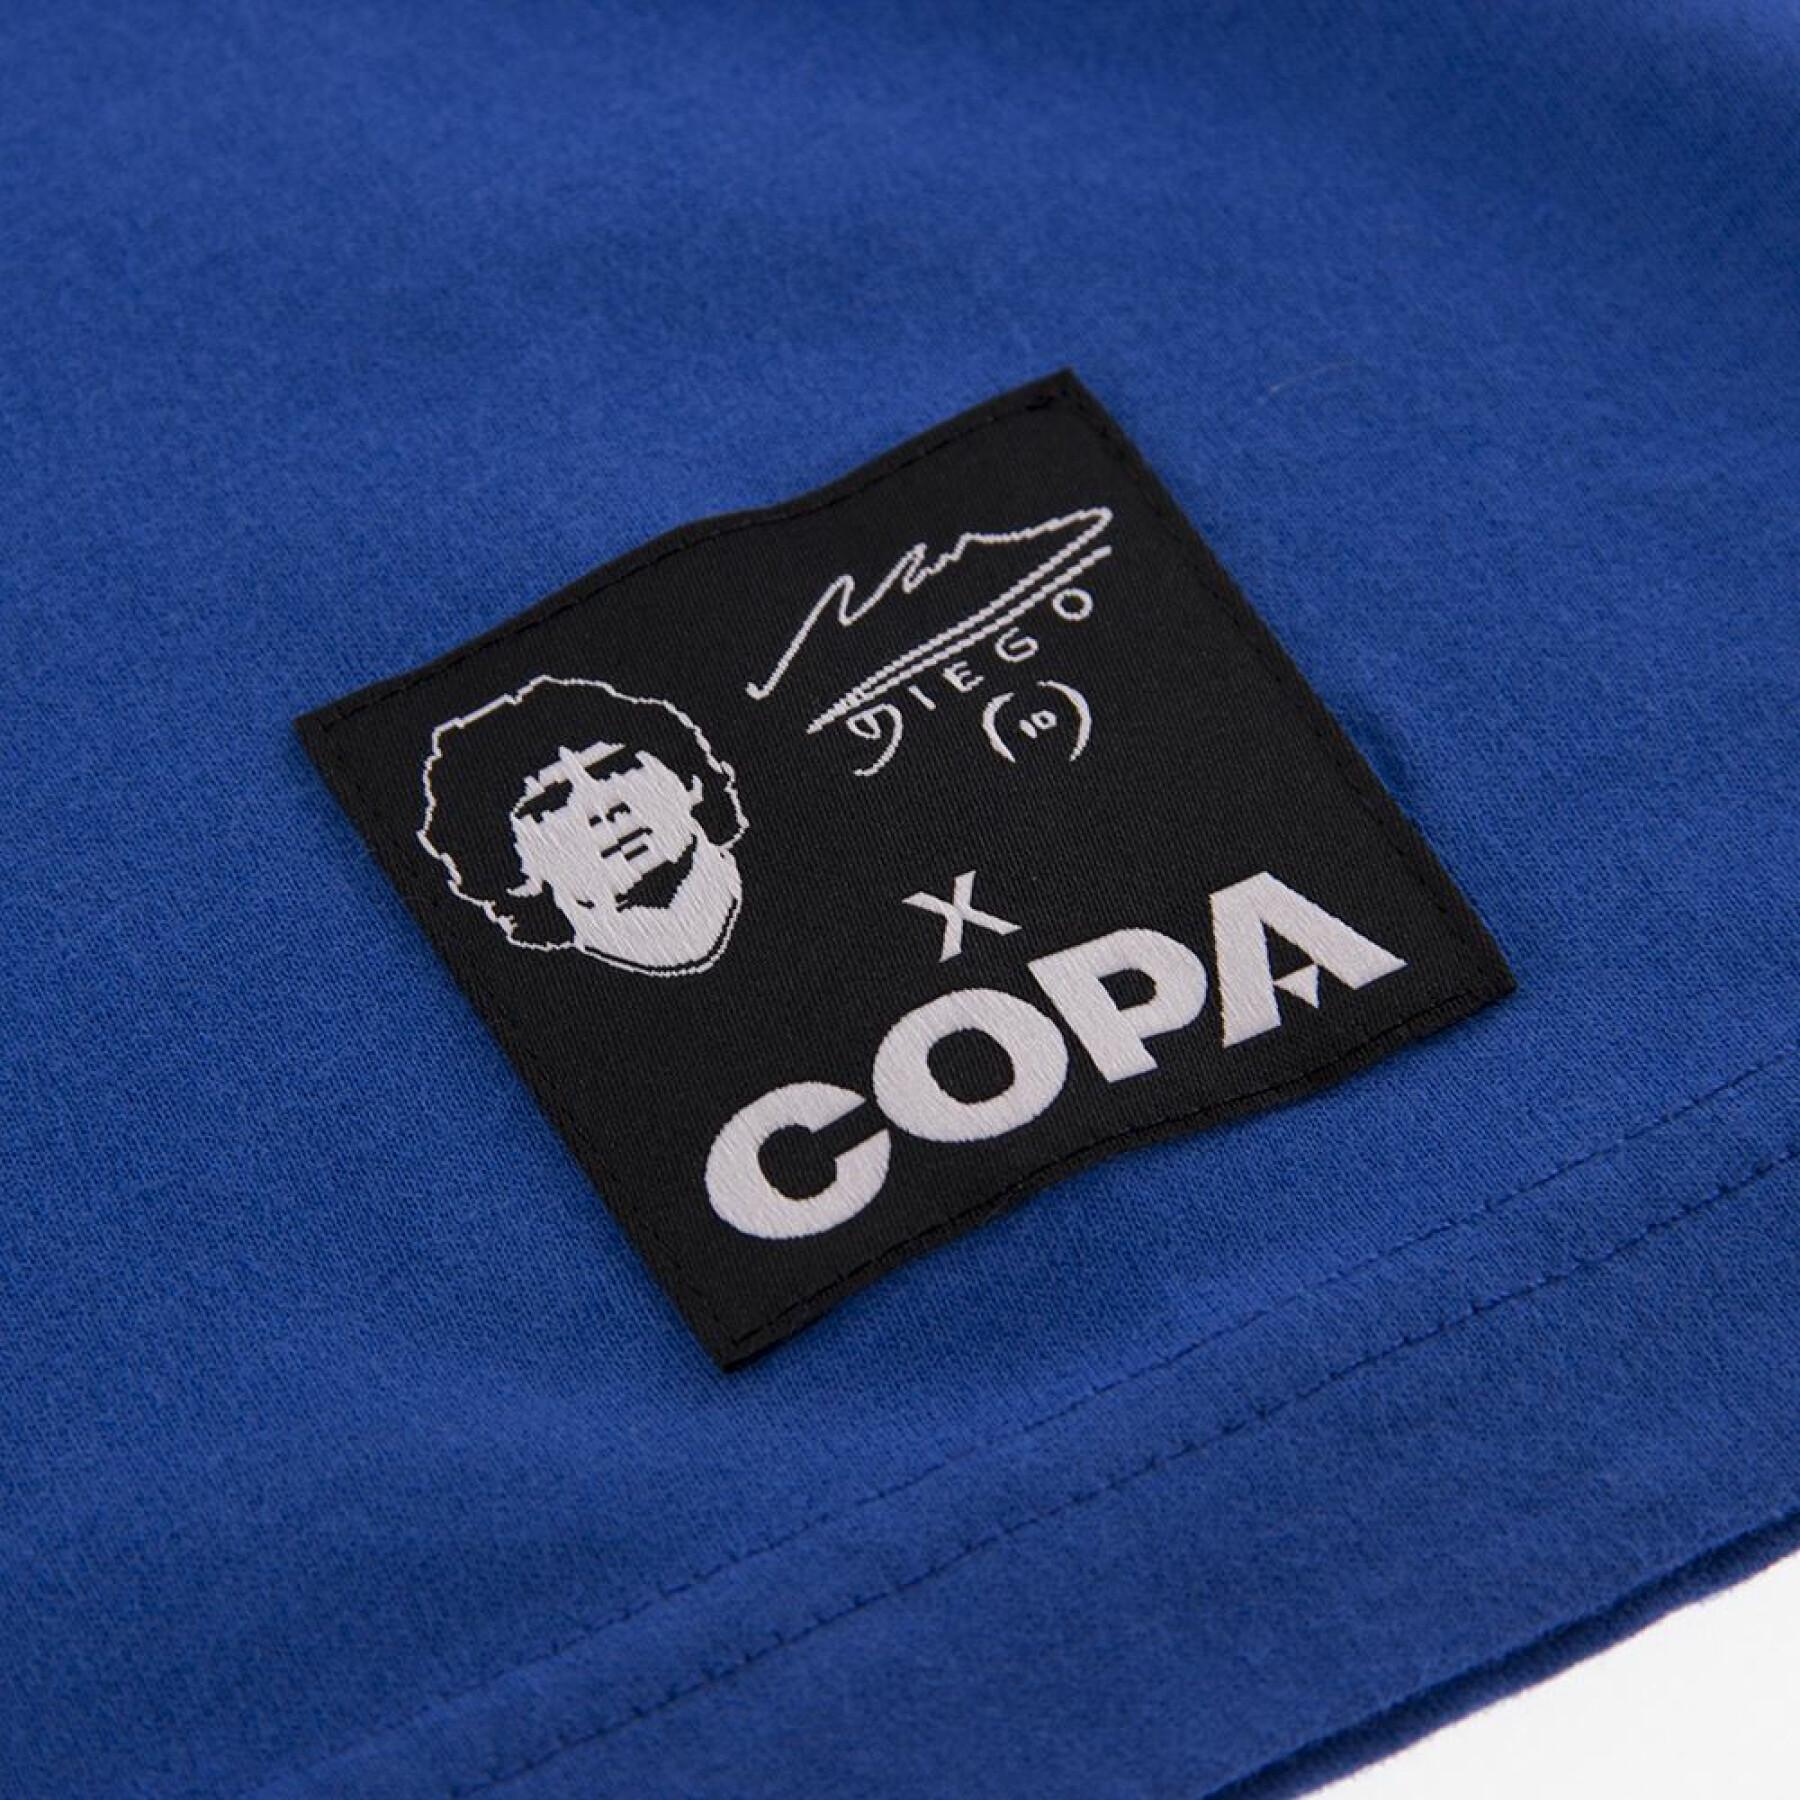 T-shirt bordada Copa Boca Juniors Maradona